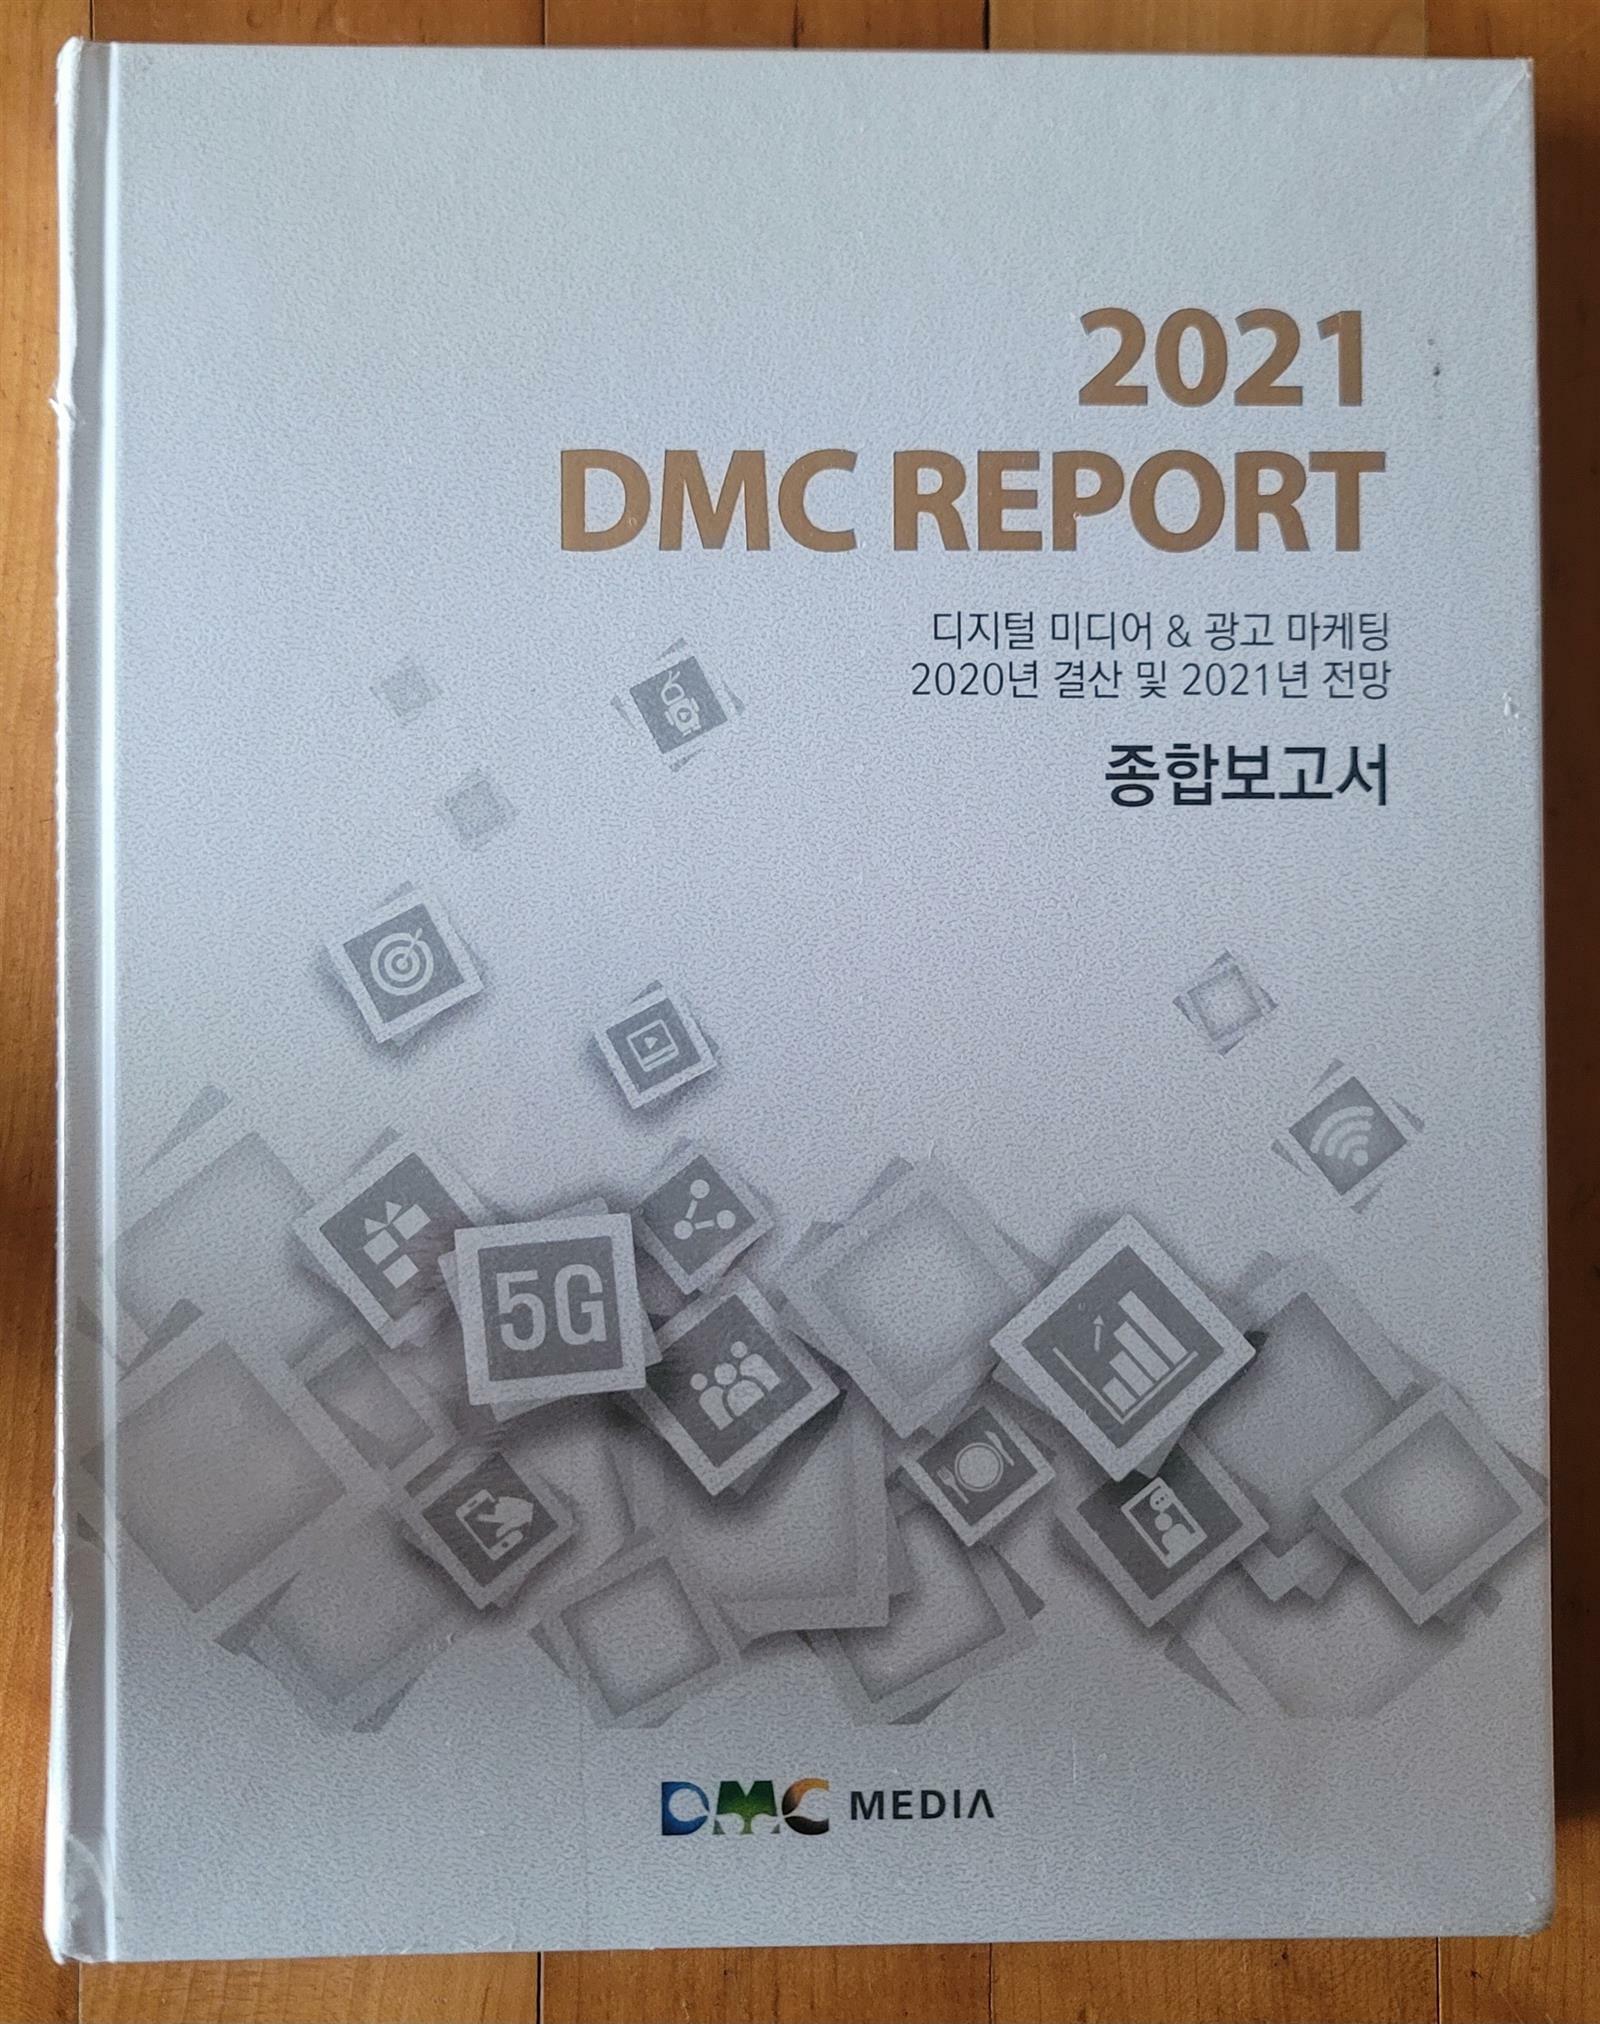 [중고] 2021 DMC REPORT 디지털 미디어 & 광고마케팅 2020 결산 및 2021년 전망 종합보고서 DMC MEDIA 2021년 최상급